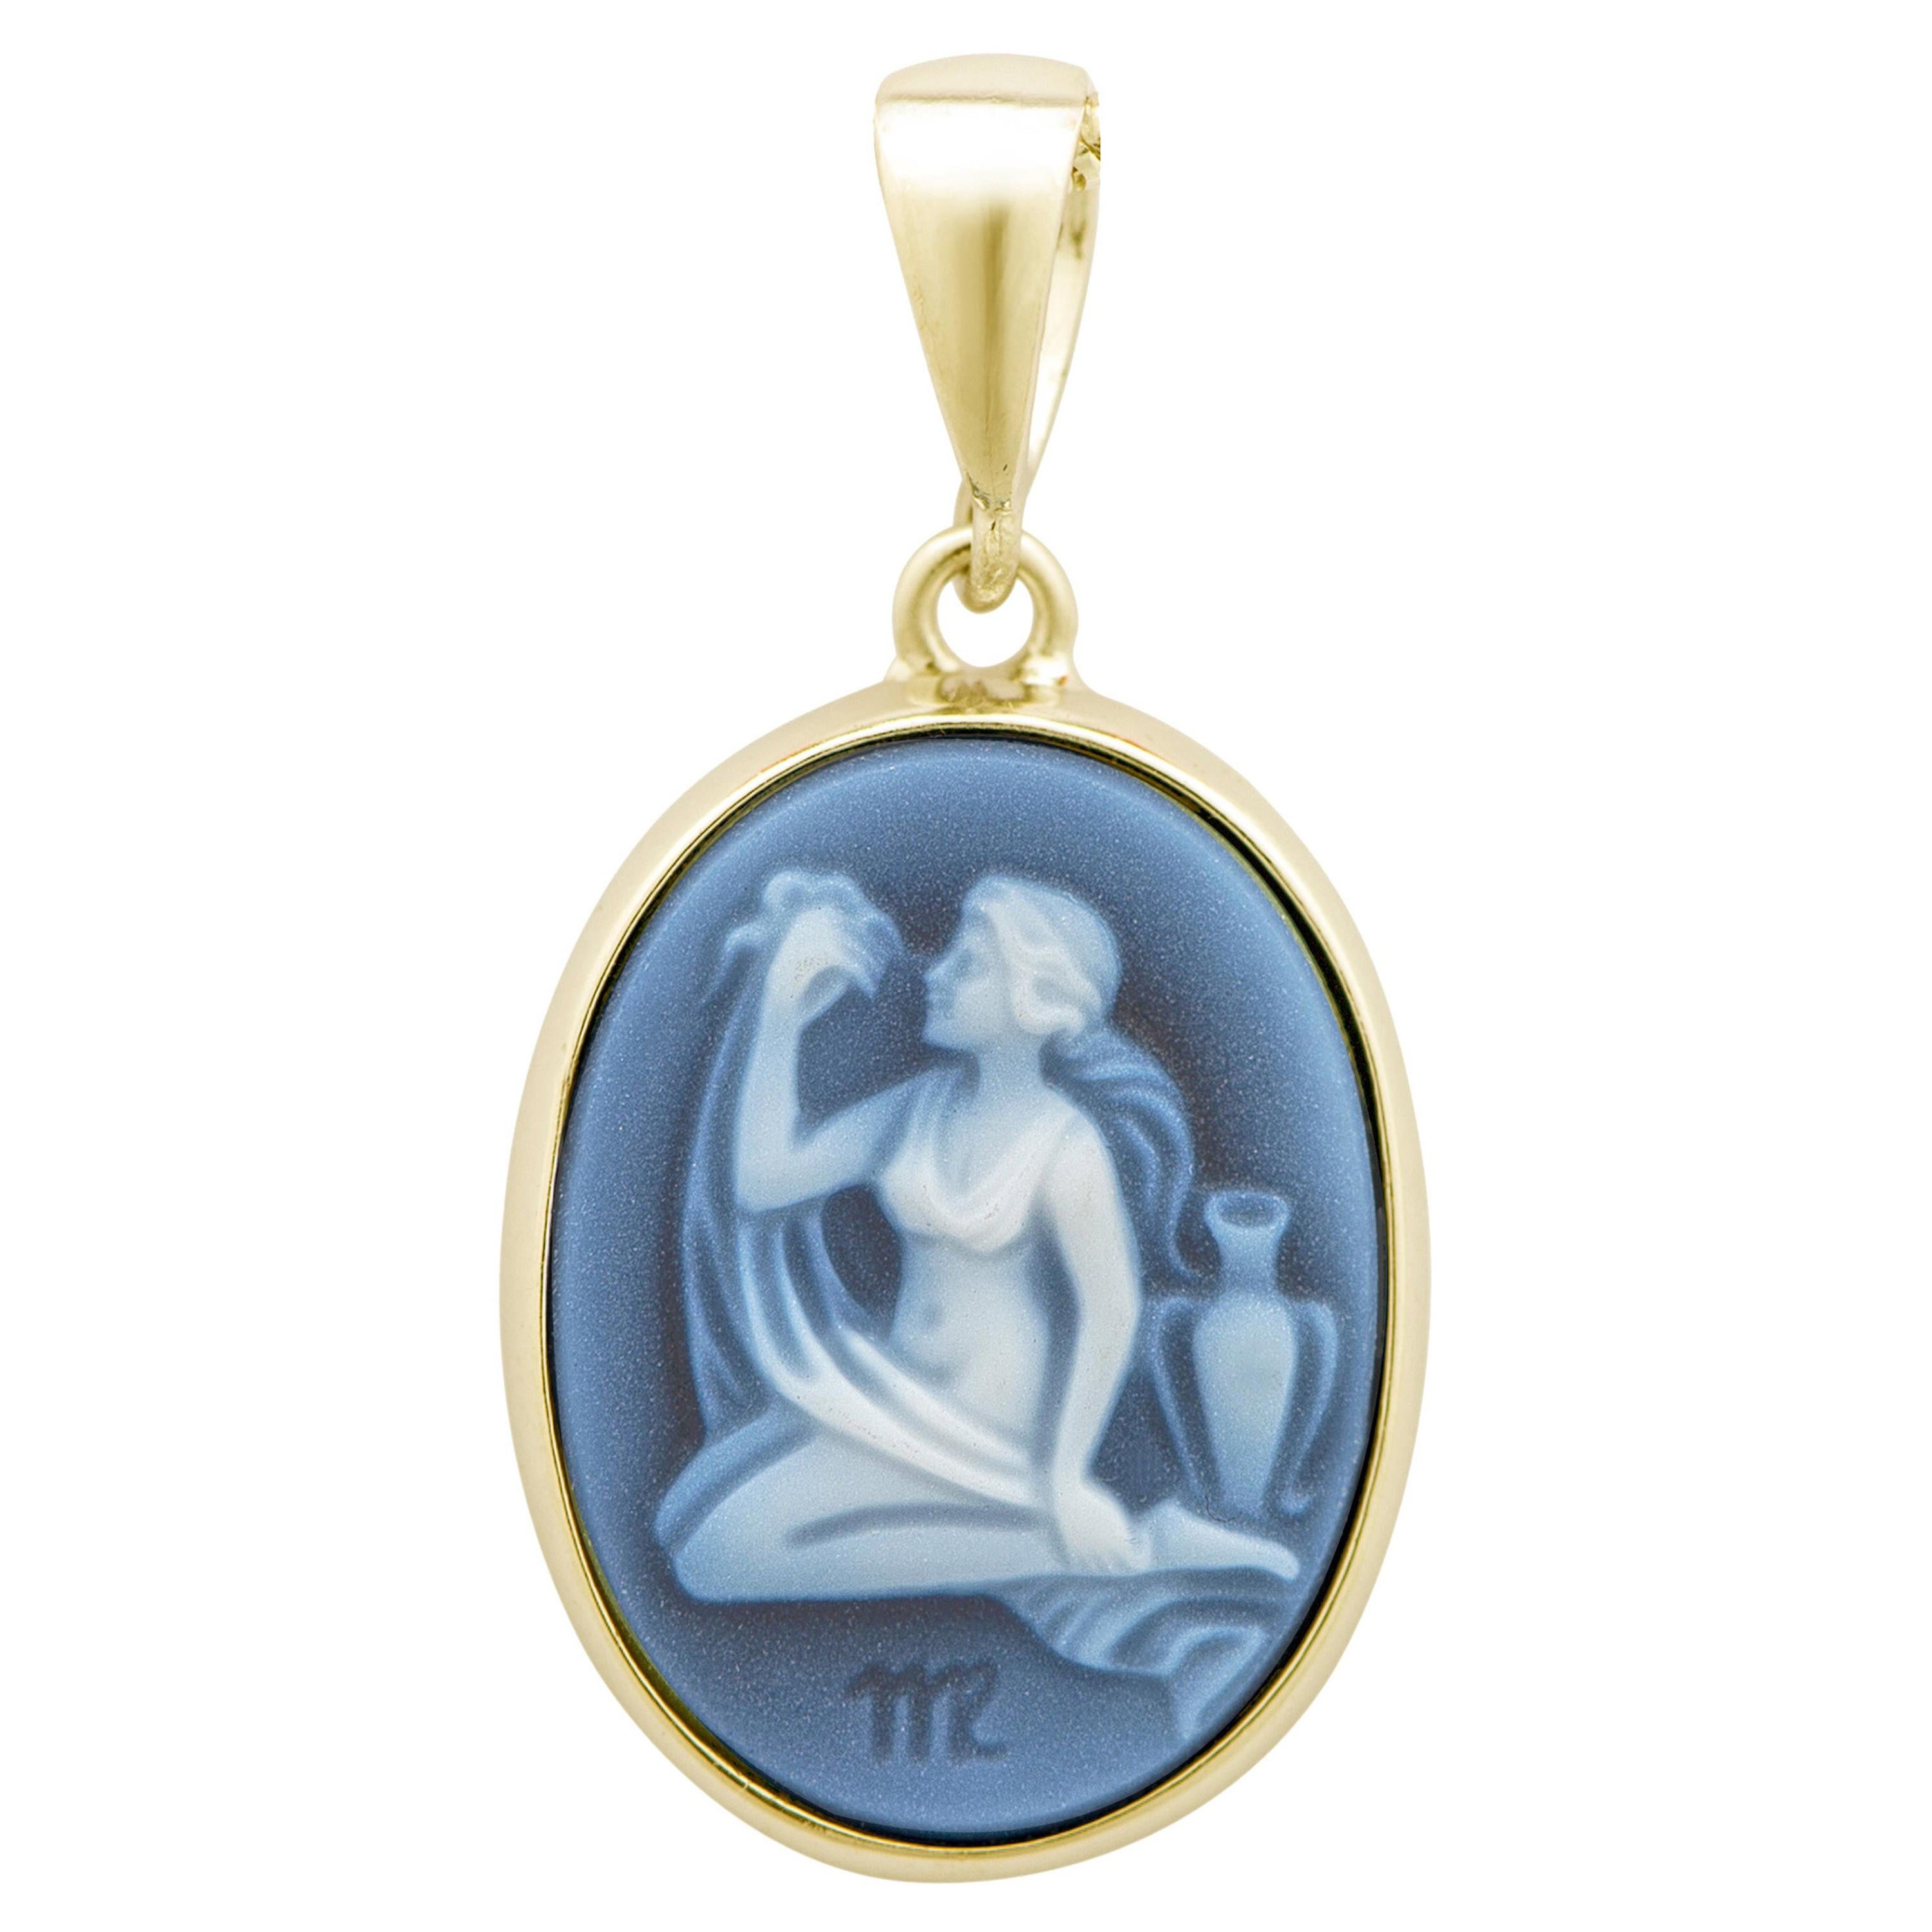 Collier en or 18K avec pendentif camée en agate, sculpté à la main, représentant la Vierge, le Zodiac